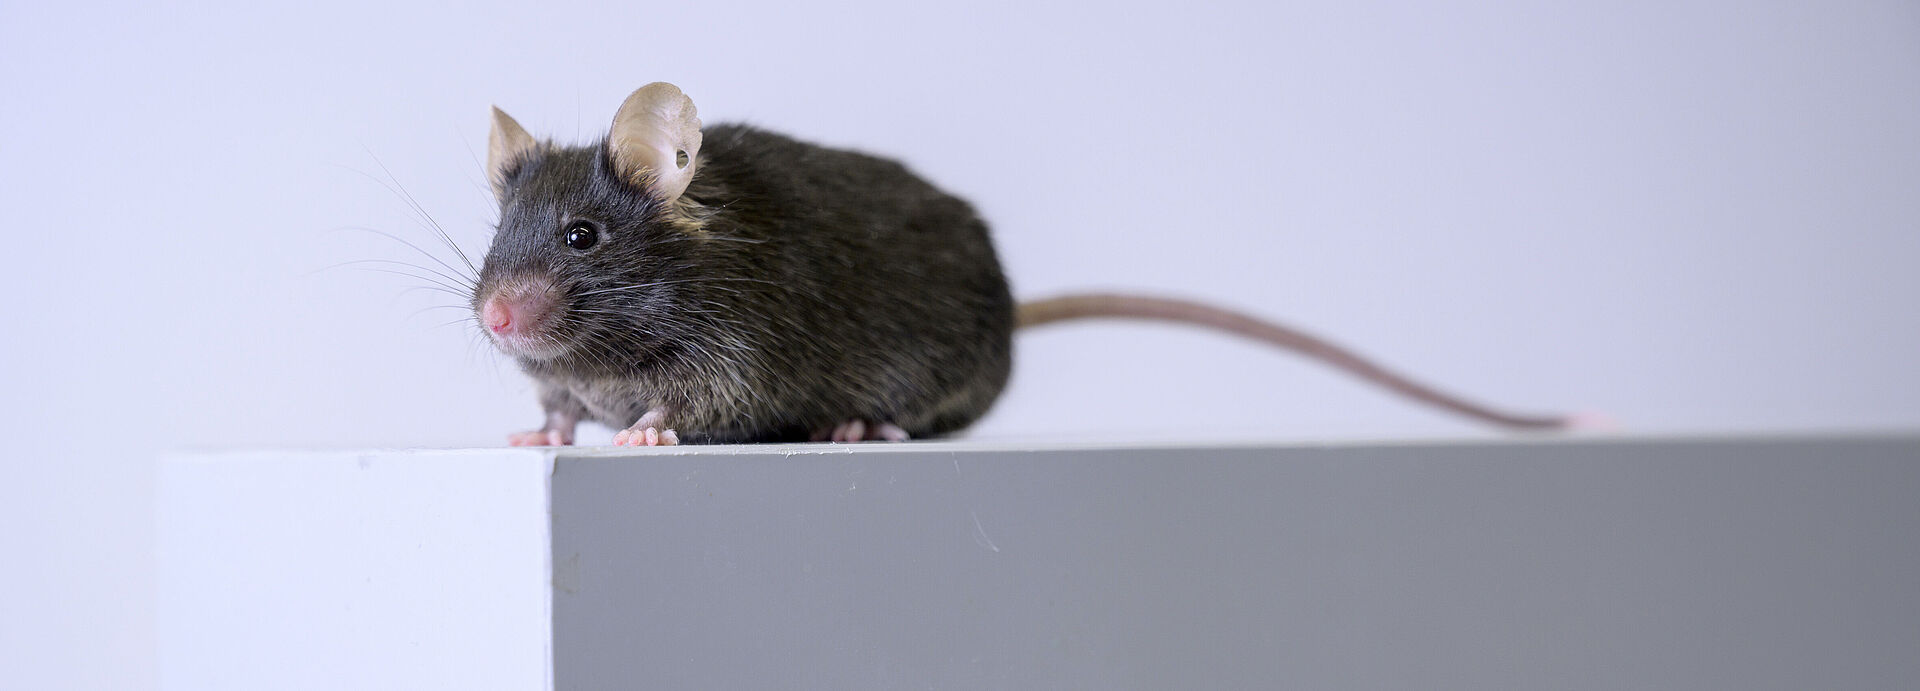 Bild zeigt eine Maus auf einem Block.